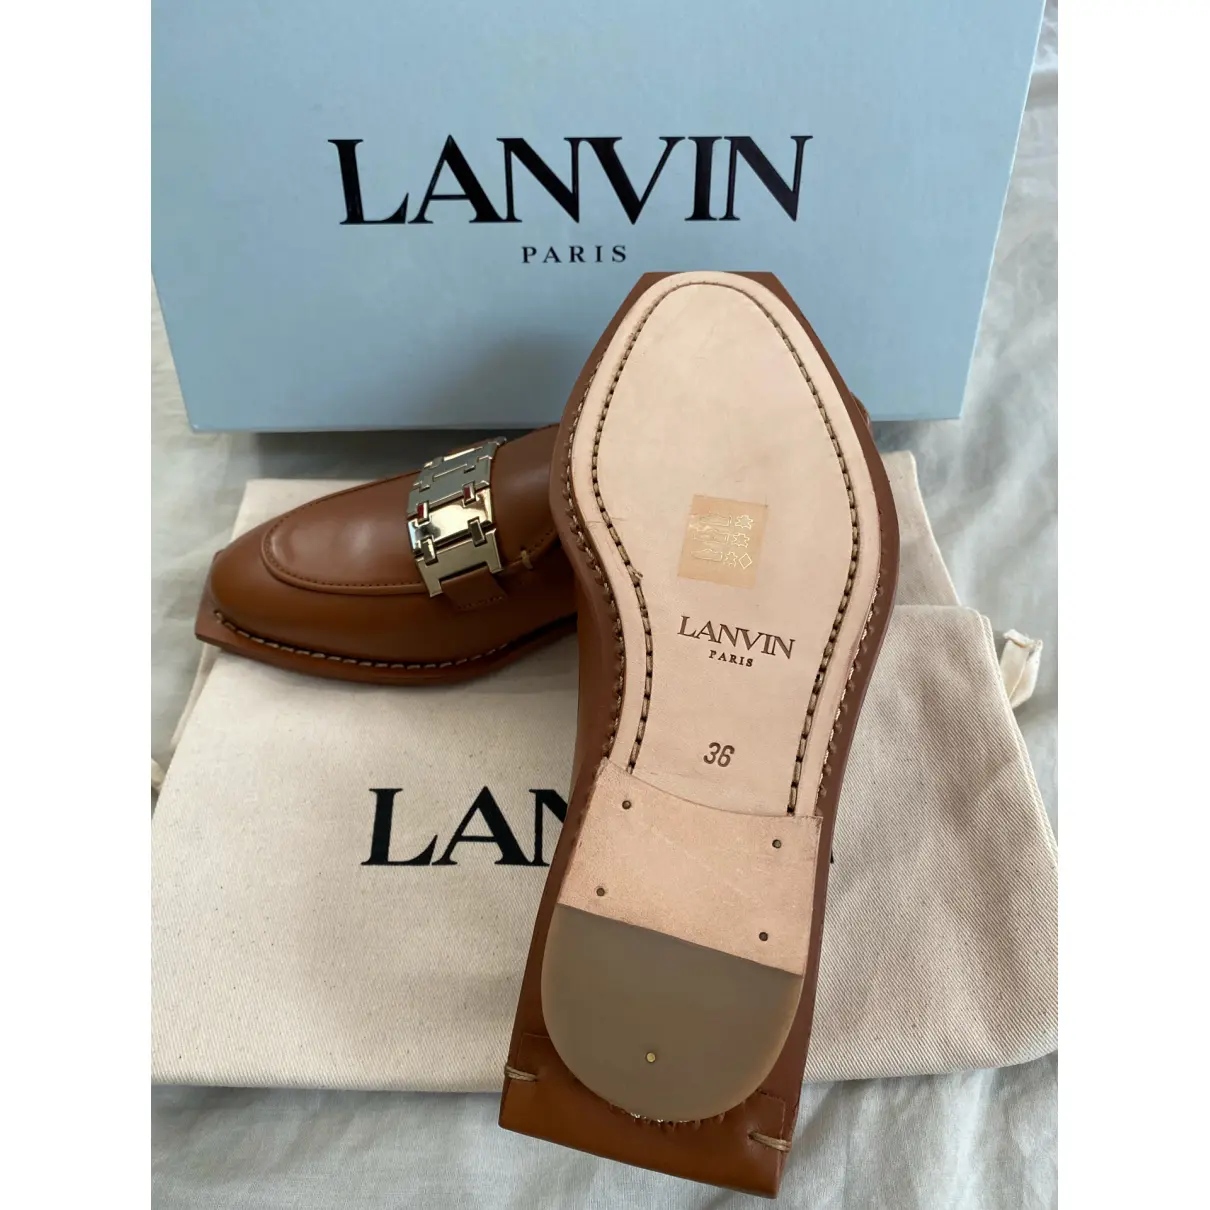 Luxury Lanvin Flats Women